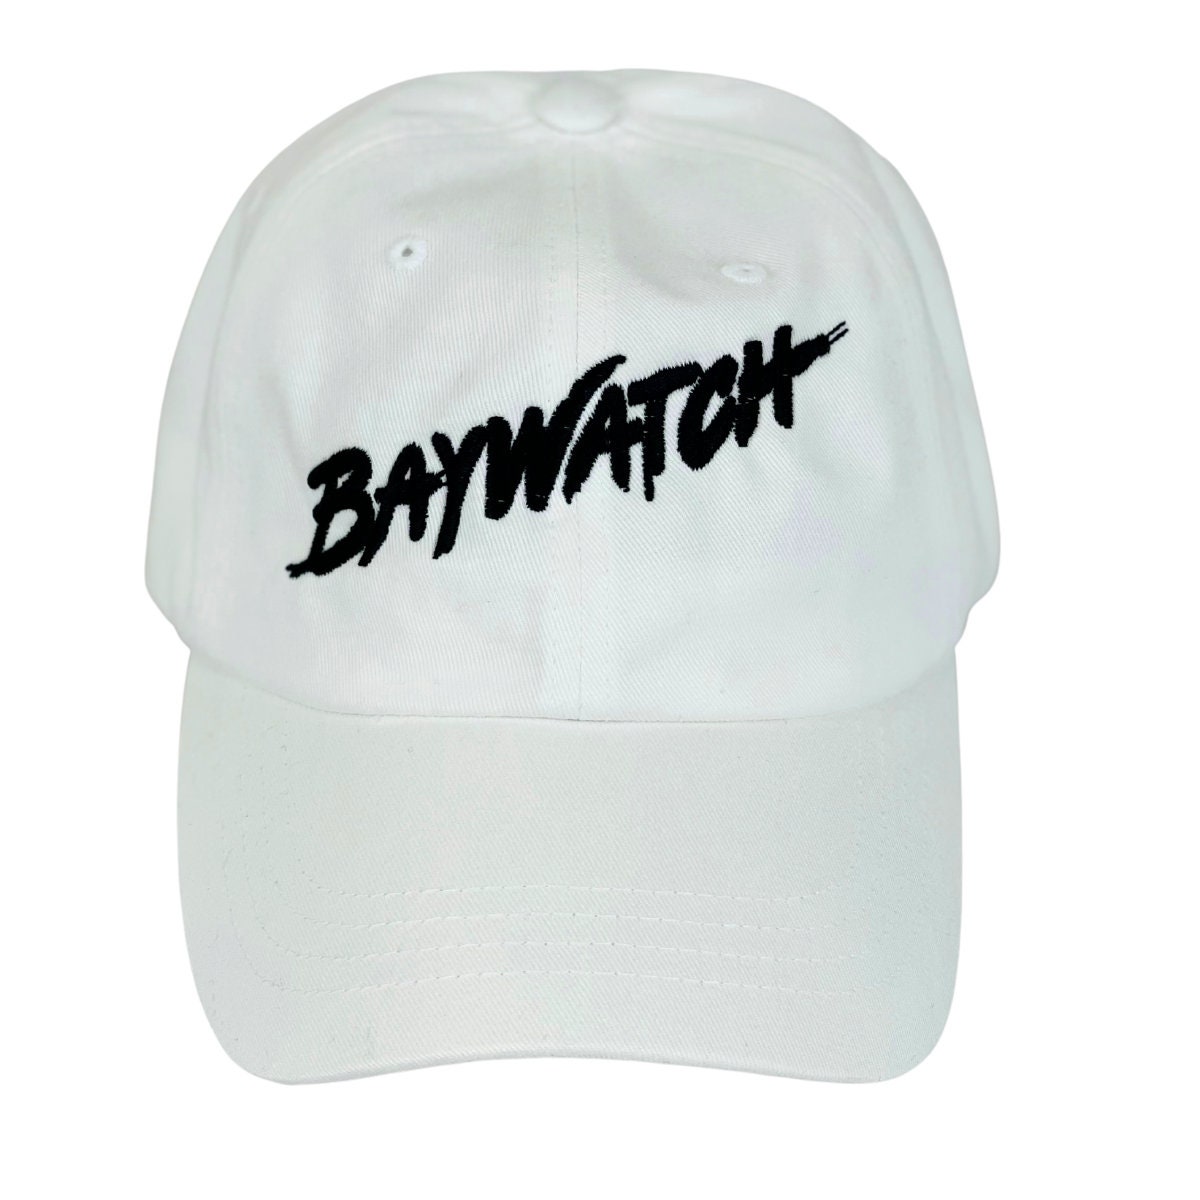 Baywatch Playa Hombre Socorrista 80s 90s TV Disfraz Despedida de Soltero  Nuevo